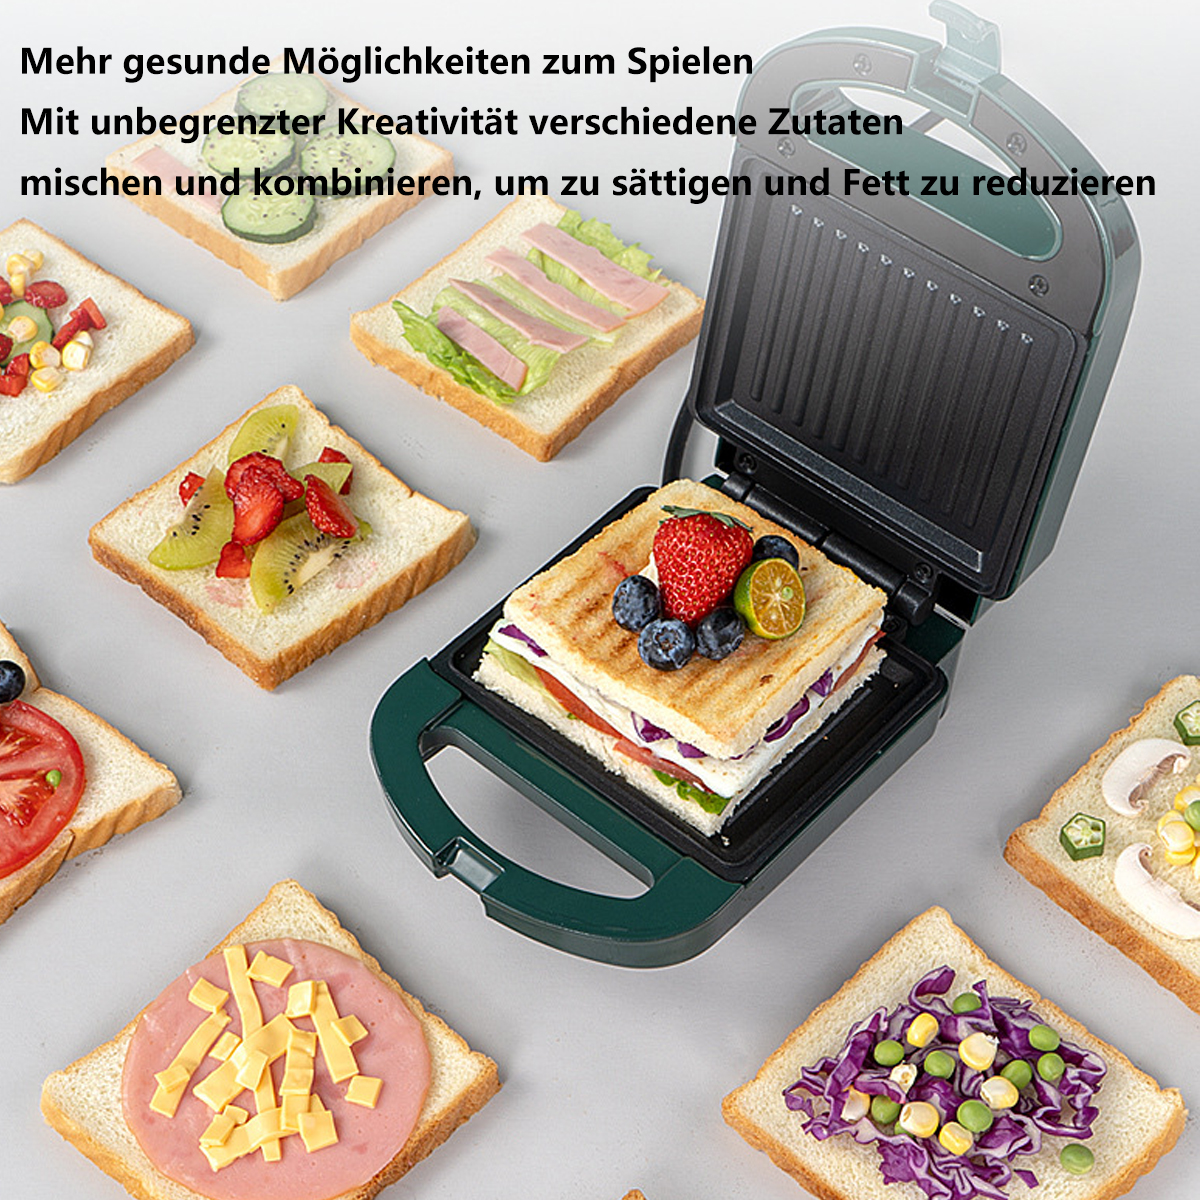 Home Weiß Helpers Sandwichmaker SYNTEK Sandwichmaker Weiß Multifunktions-Toaster Sandwichmaker Frühstücksmaker